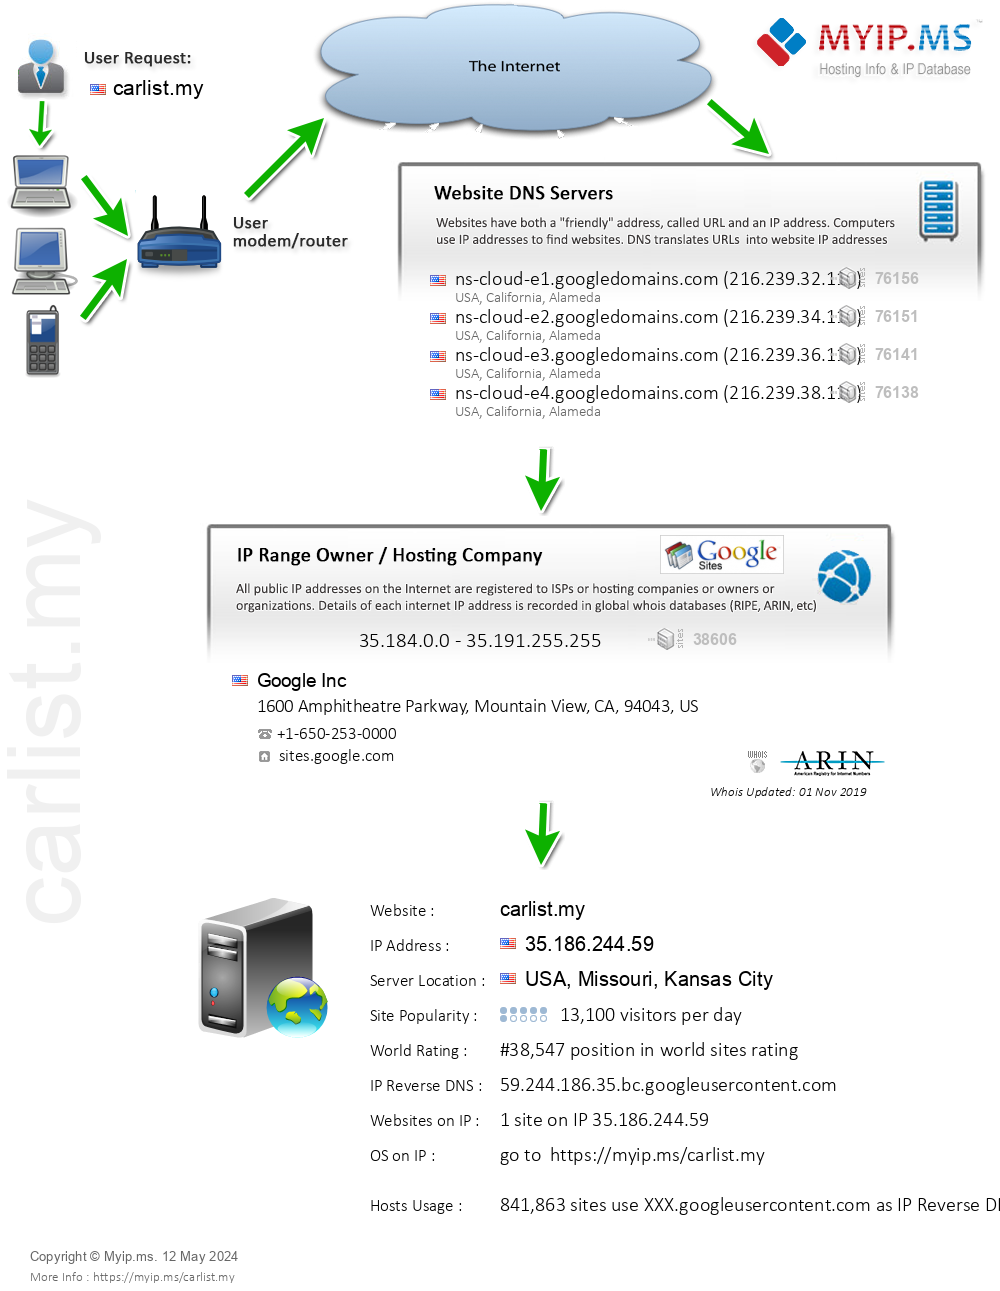 Carlist.my - Website Hosting Visual IP Diagram